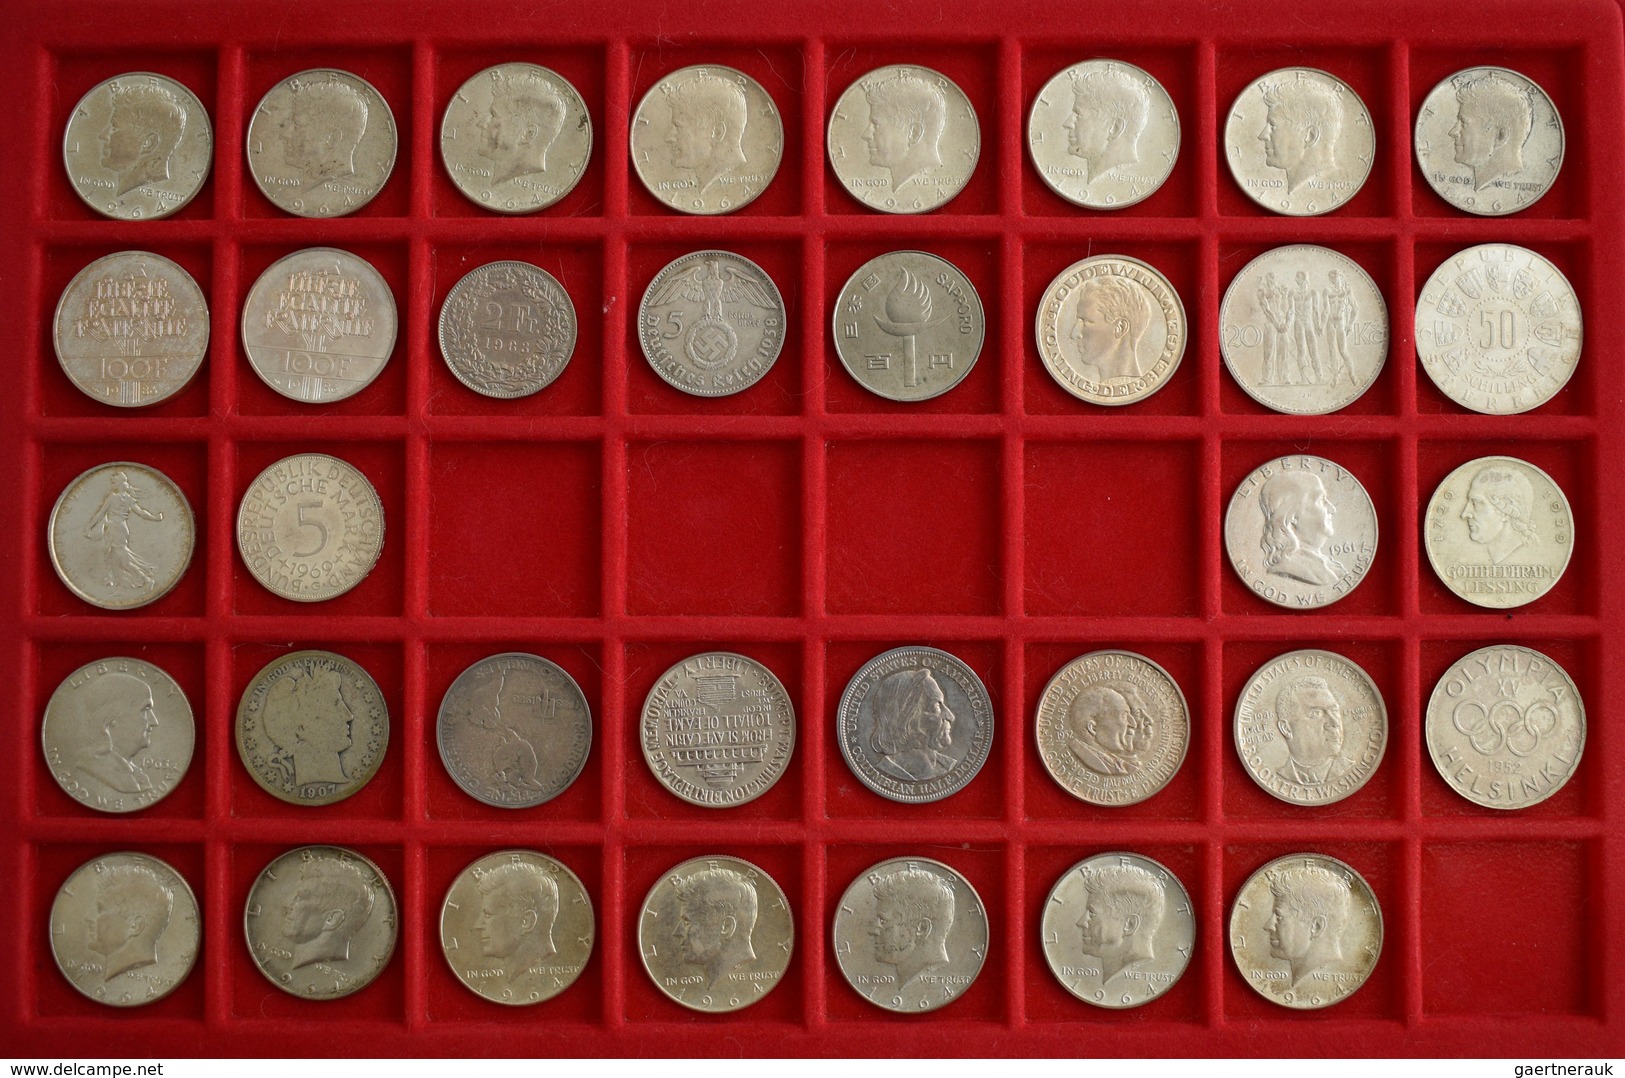 Alle Welt: Eine bemerkenswerte Sammlung von ca. 160 Münzen und Medaillen aus aller Welt. Der Schwerp